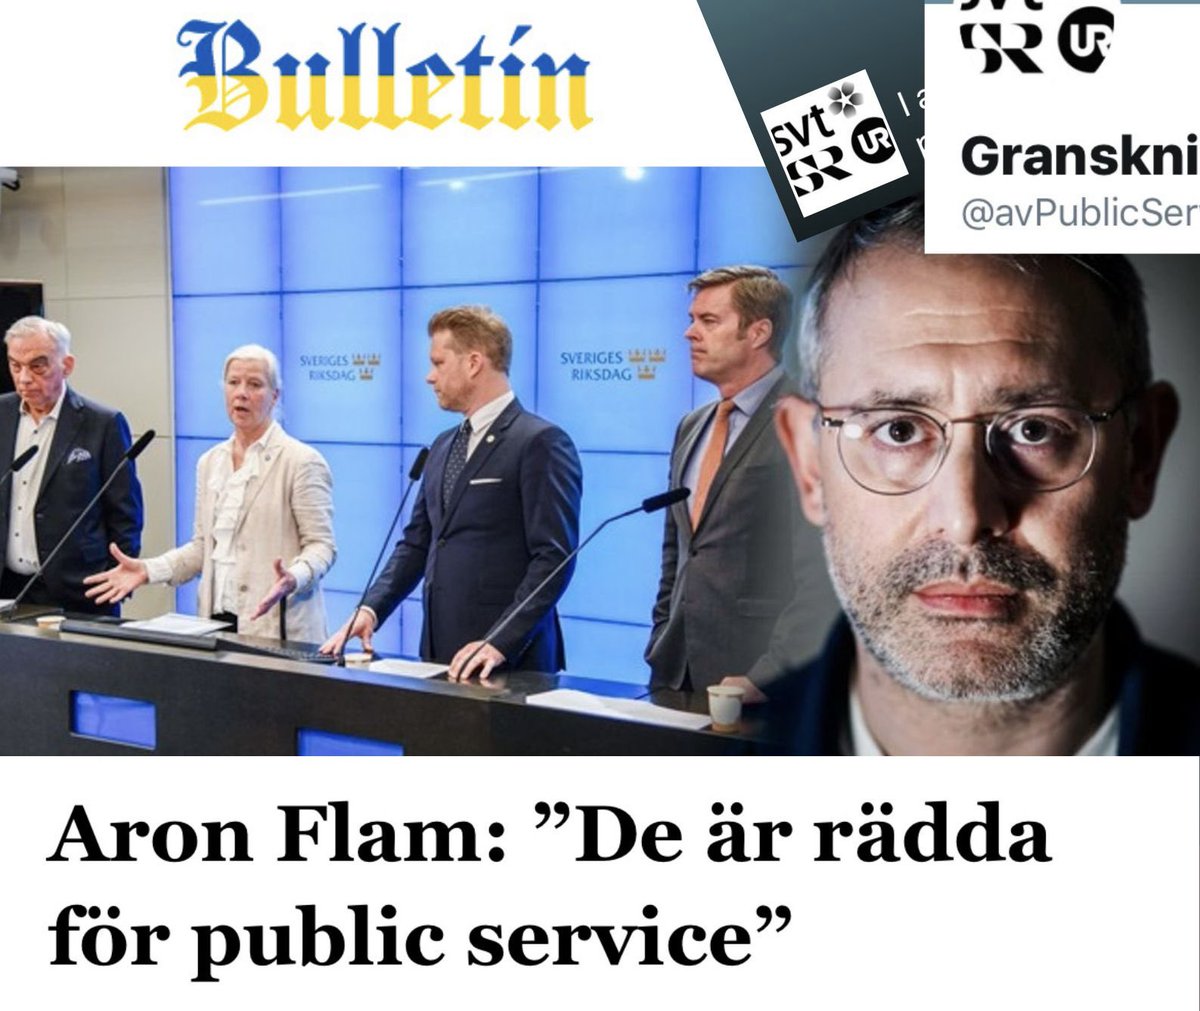 Tidöpartierna är rädda för ”public service” och har köpt vänsterns världsbild menar @AronFlam 

@Bulletin_Nu #journalistik bulletin.nu/aron-flam-de-a…